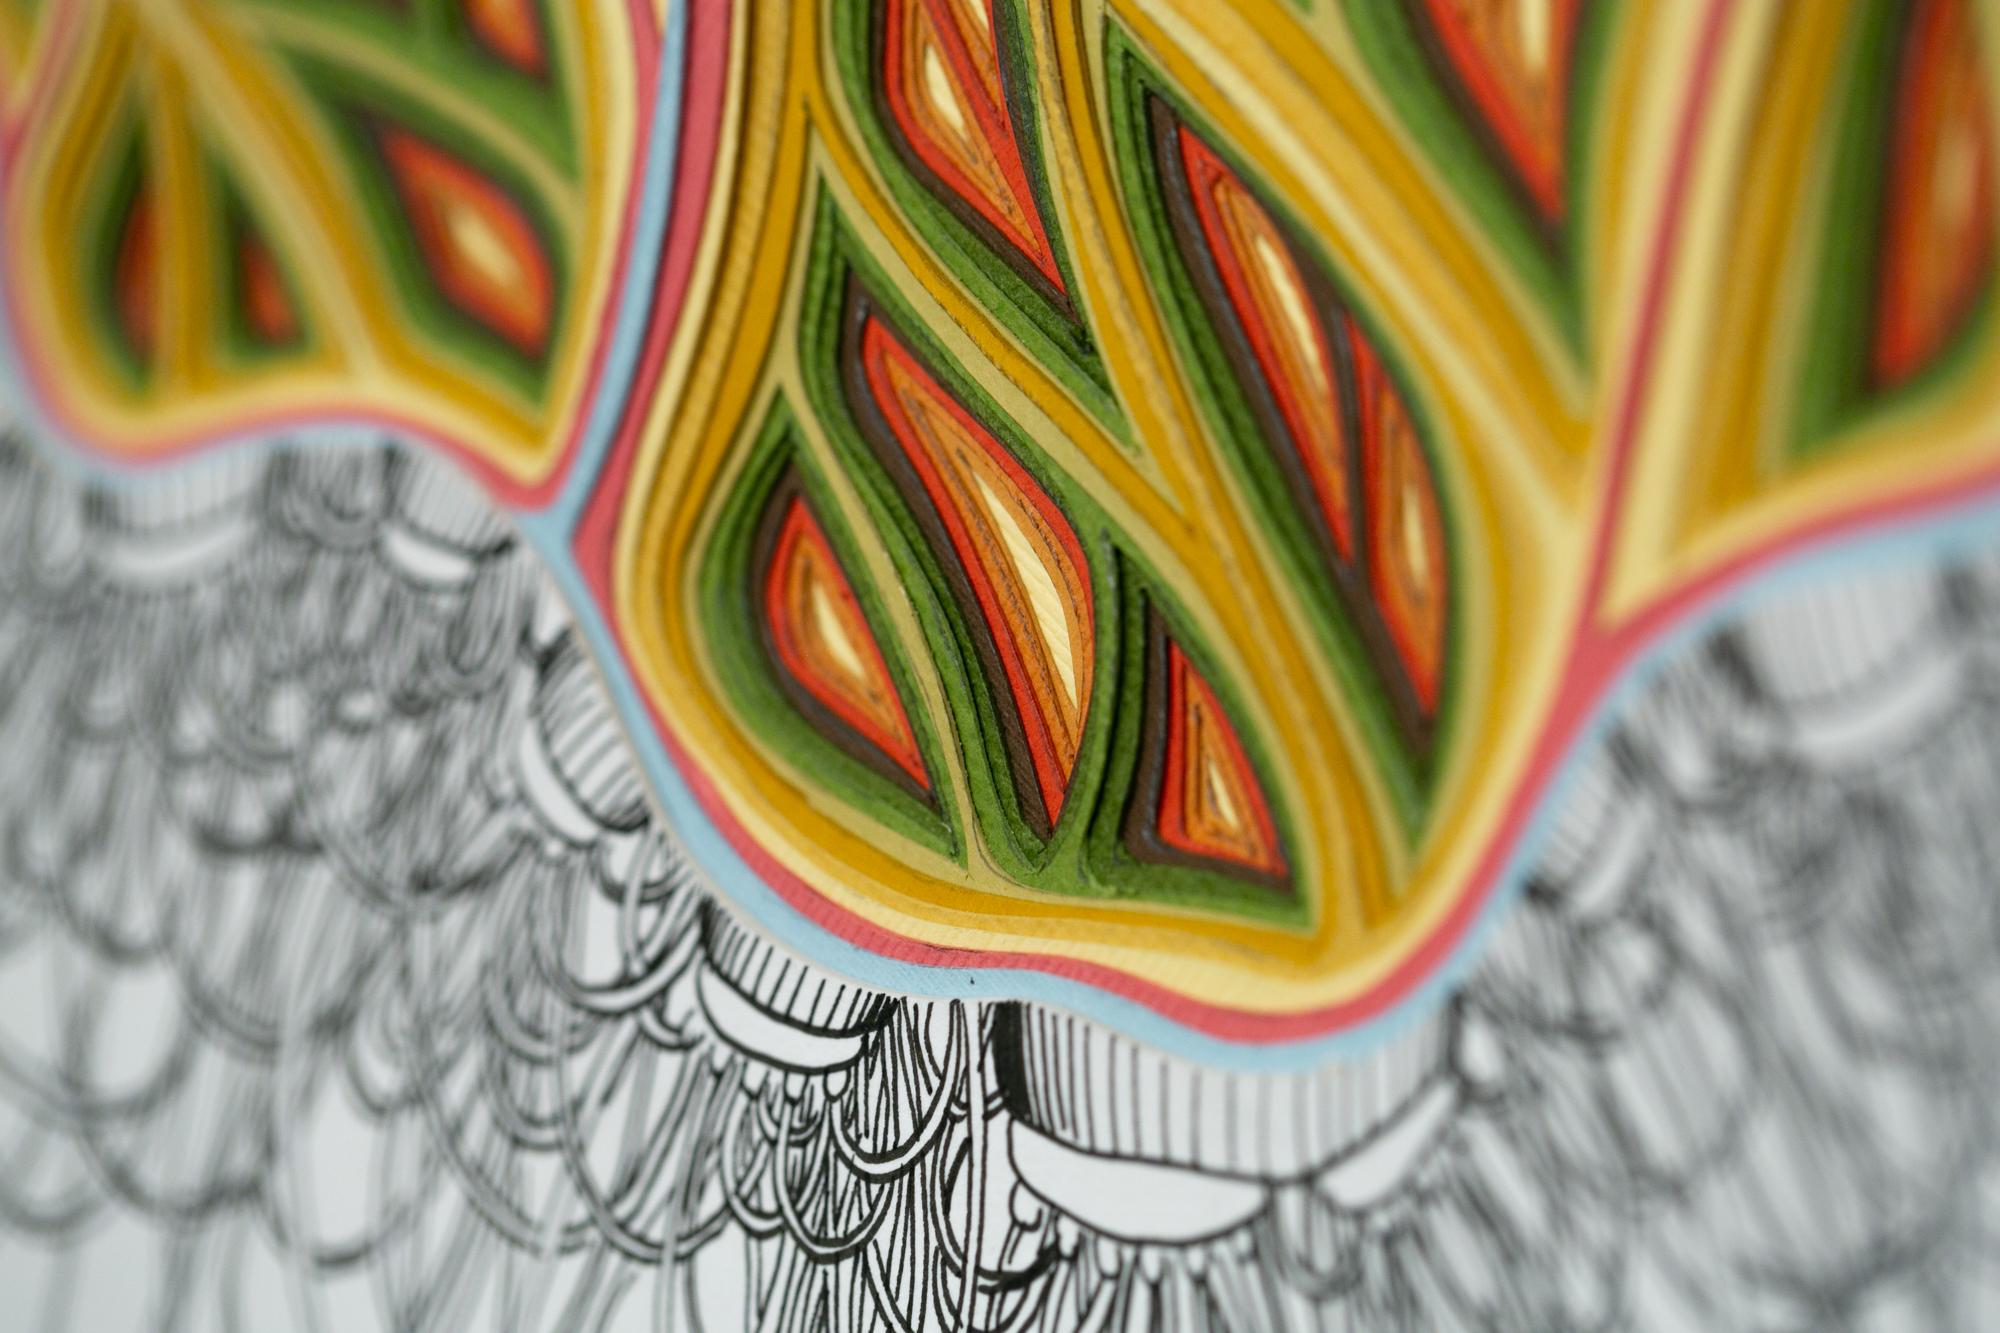 Original mehrfarbiges handgeschnittenes Papier und Tinte auf Illustration Board geschichtet Papier Skulptur von Charles Clary Messung 16 